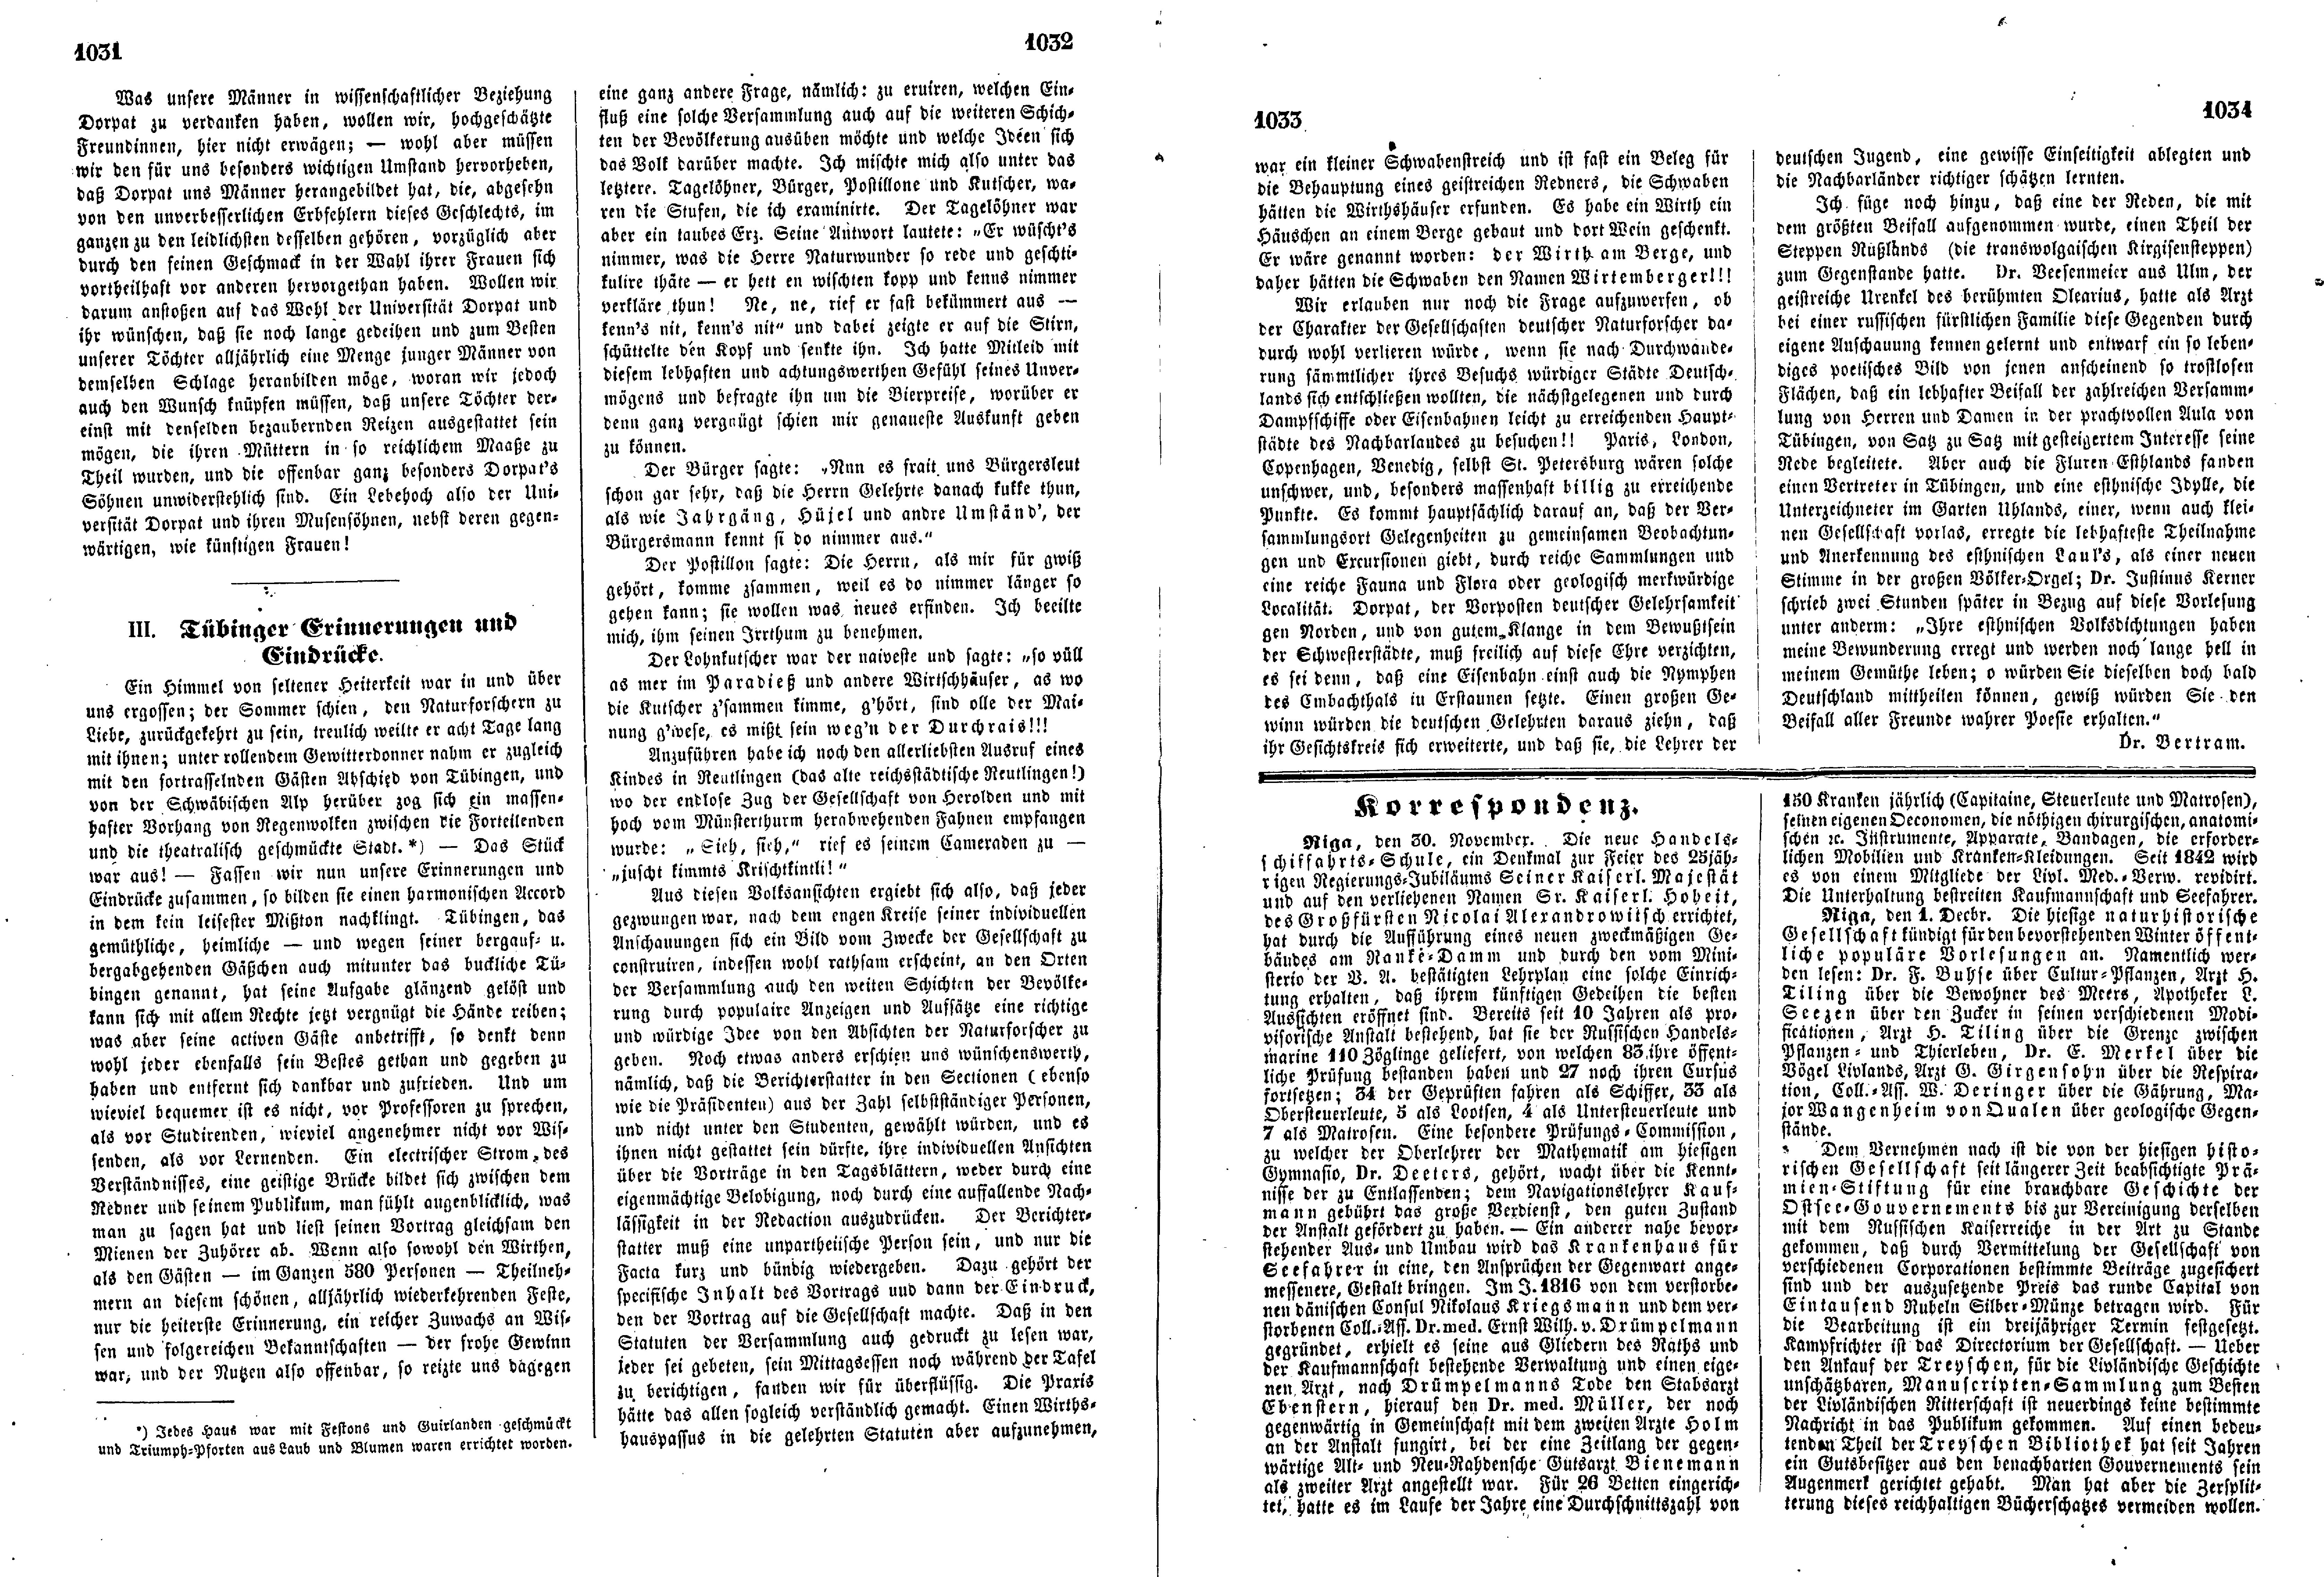 Das Inland [18] (1853) | 268. (1031-1034) Haupttext